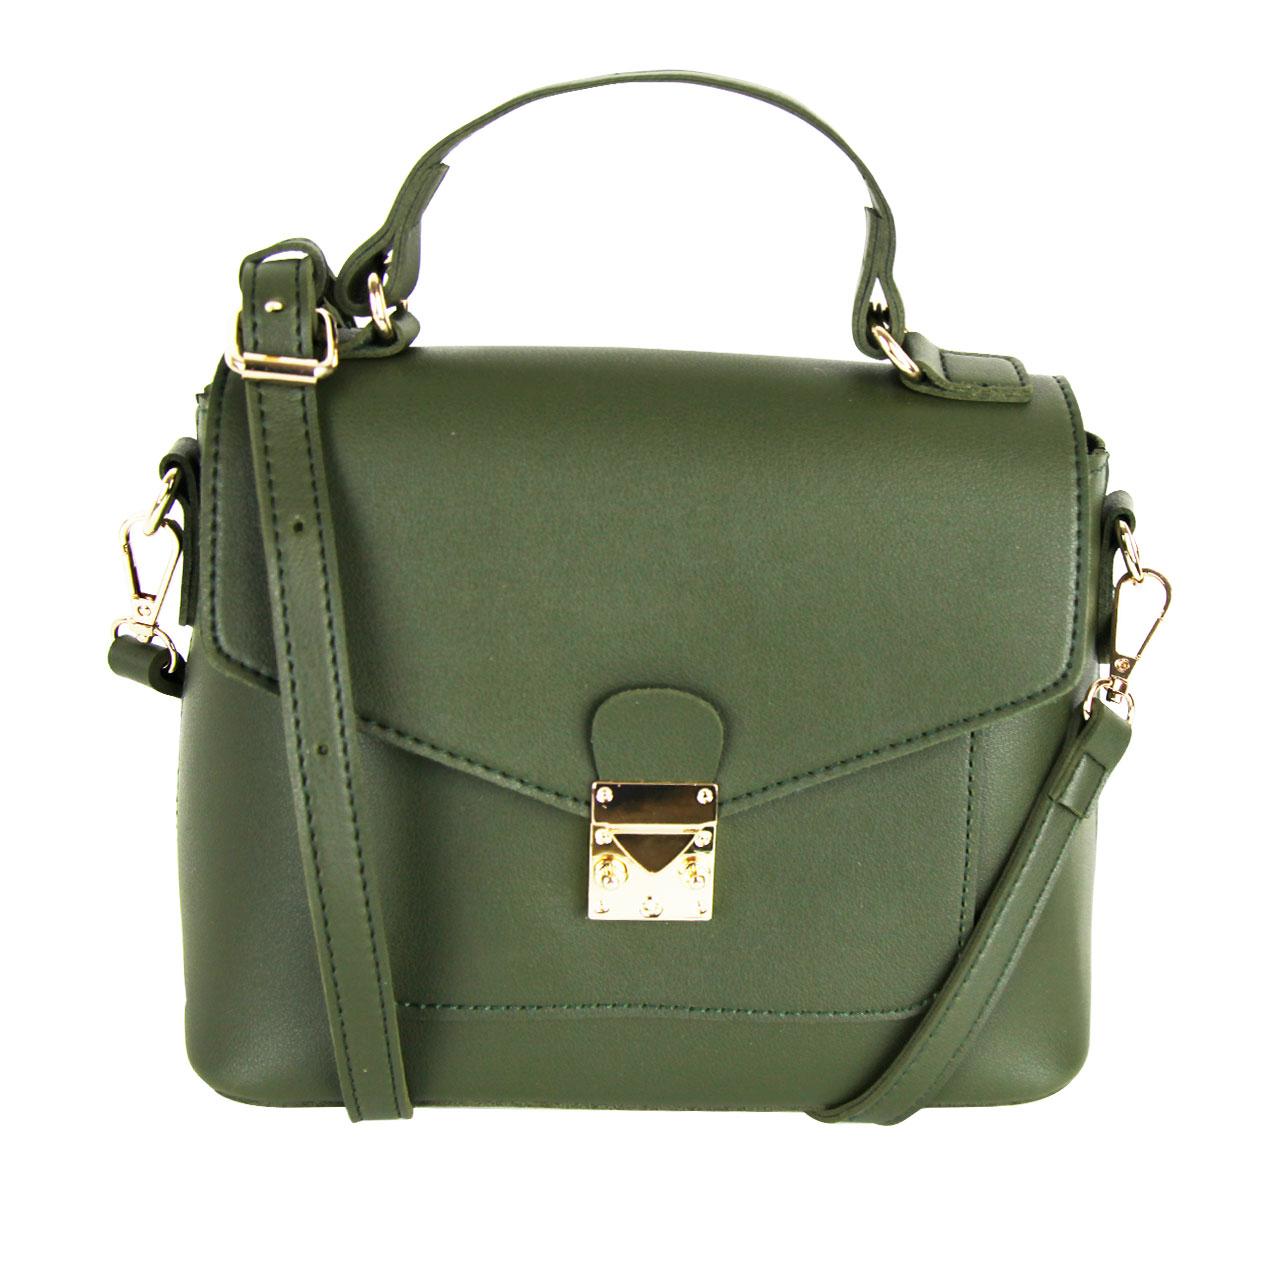 Modern Leather Straps Brown/Golden/Smog Brown Rose/Green Satchel Shoulder Bag